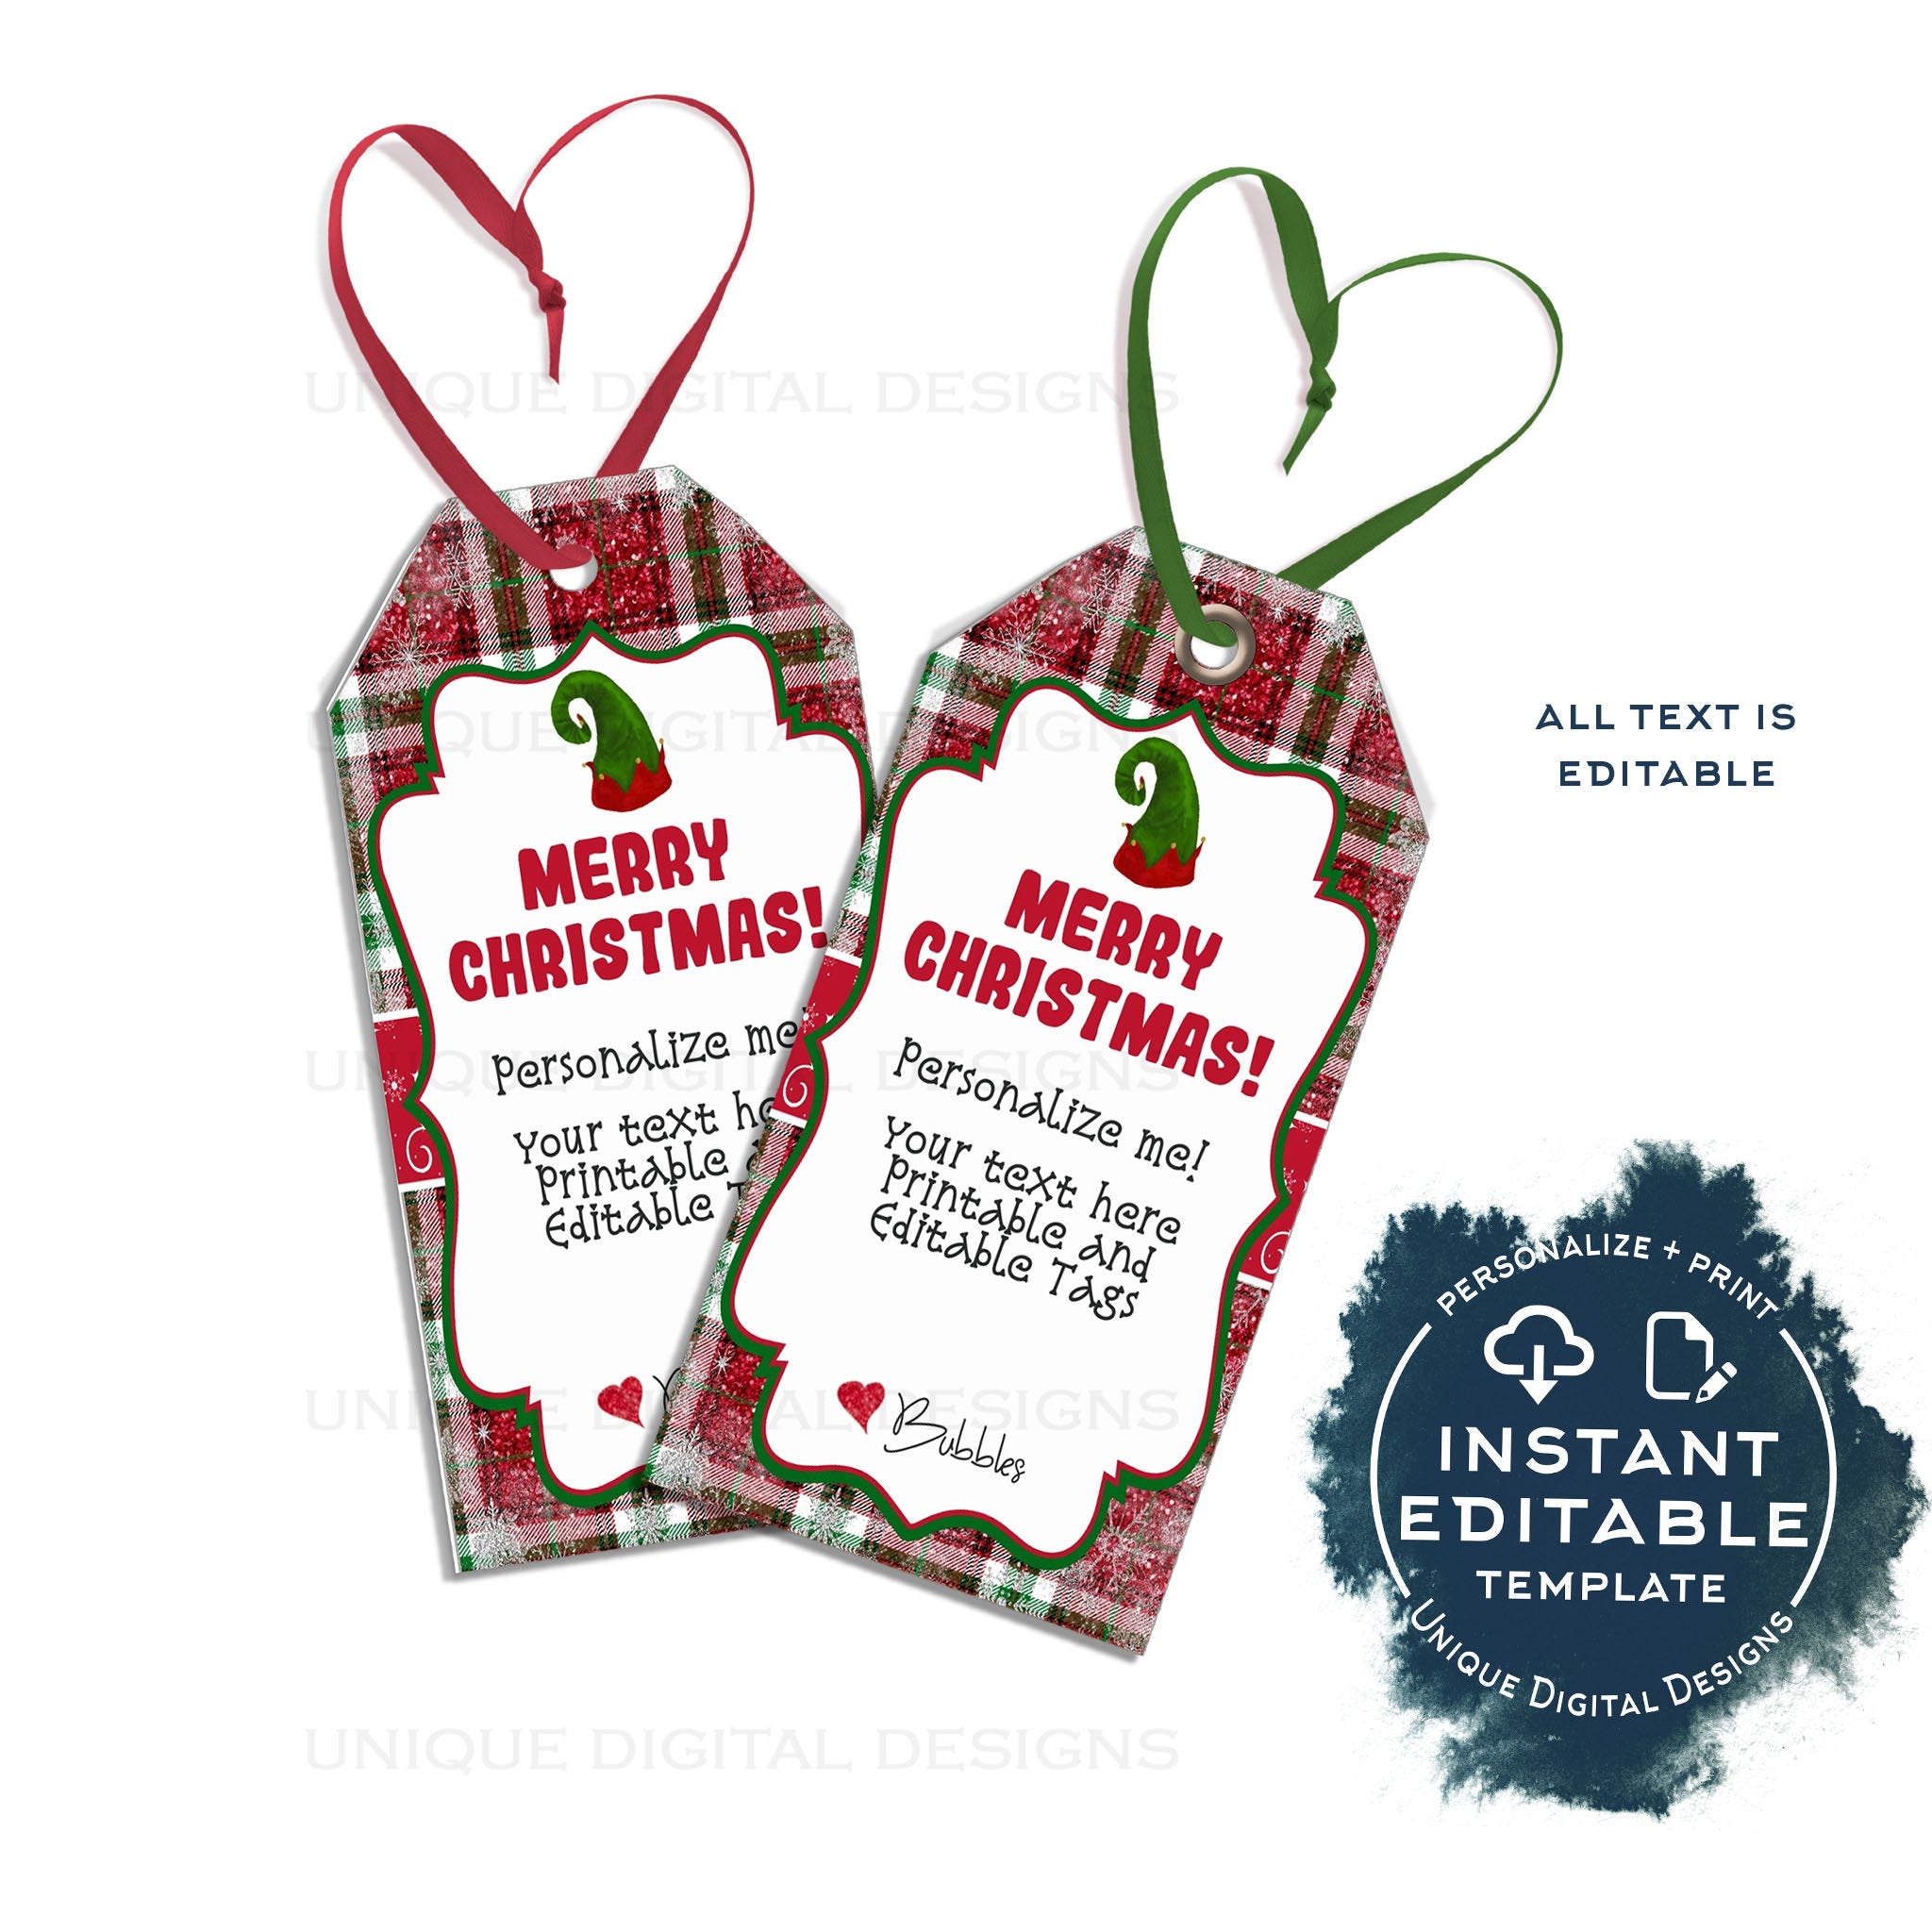 Editable Labels - Christmas and Holiday Gift Tags Printable - Name